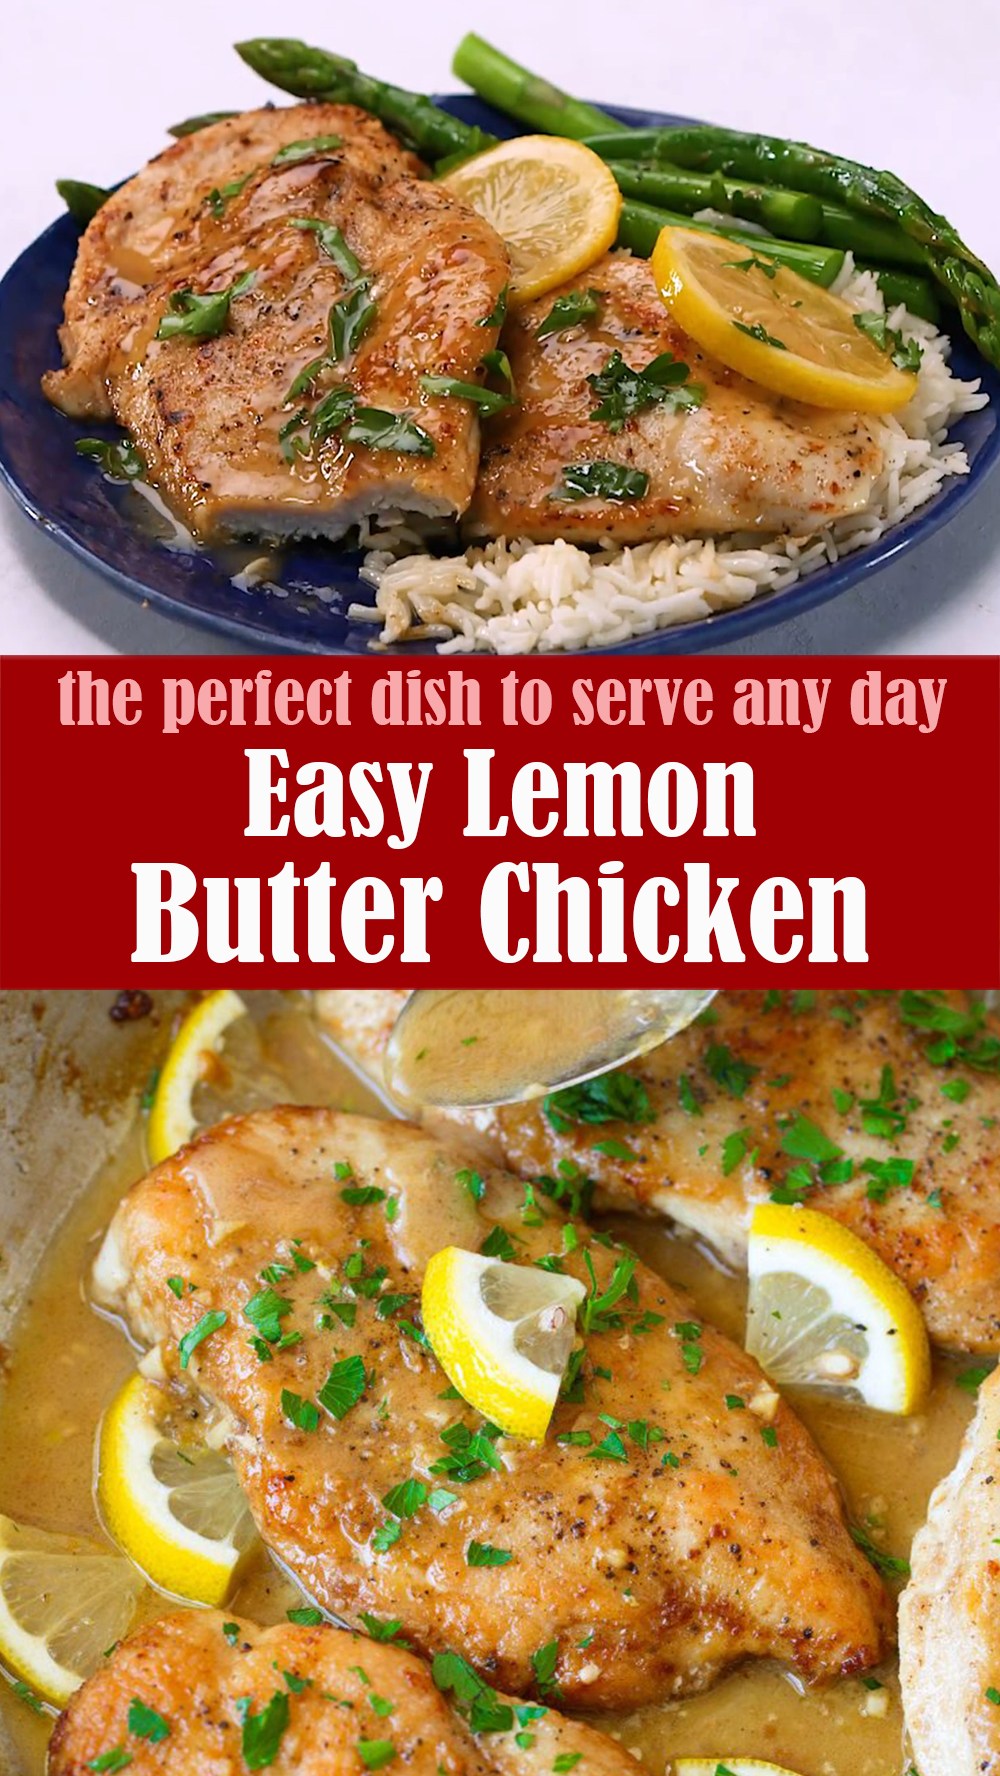 Easy Lemon Butter Chicken Recipe